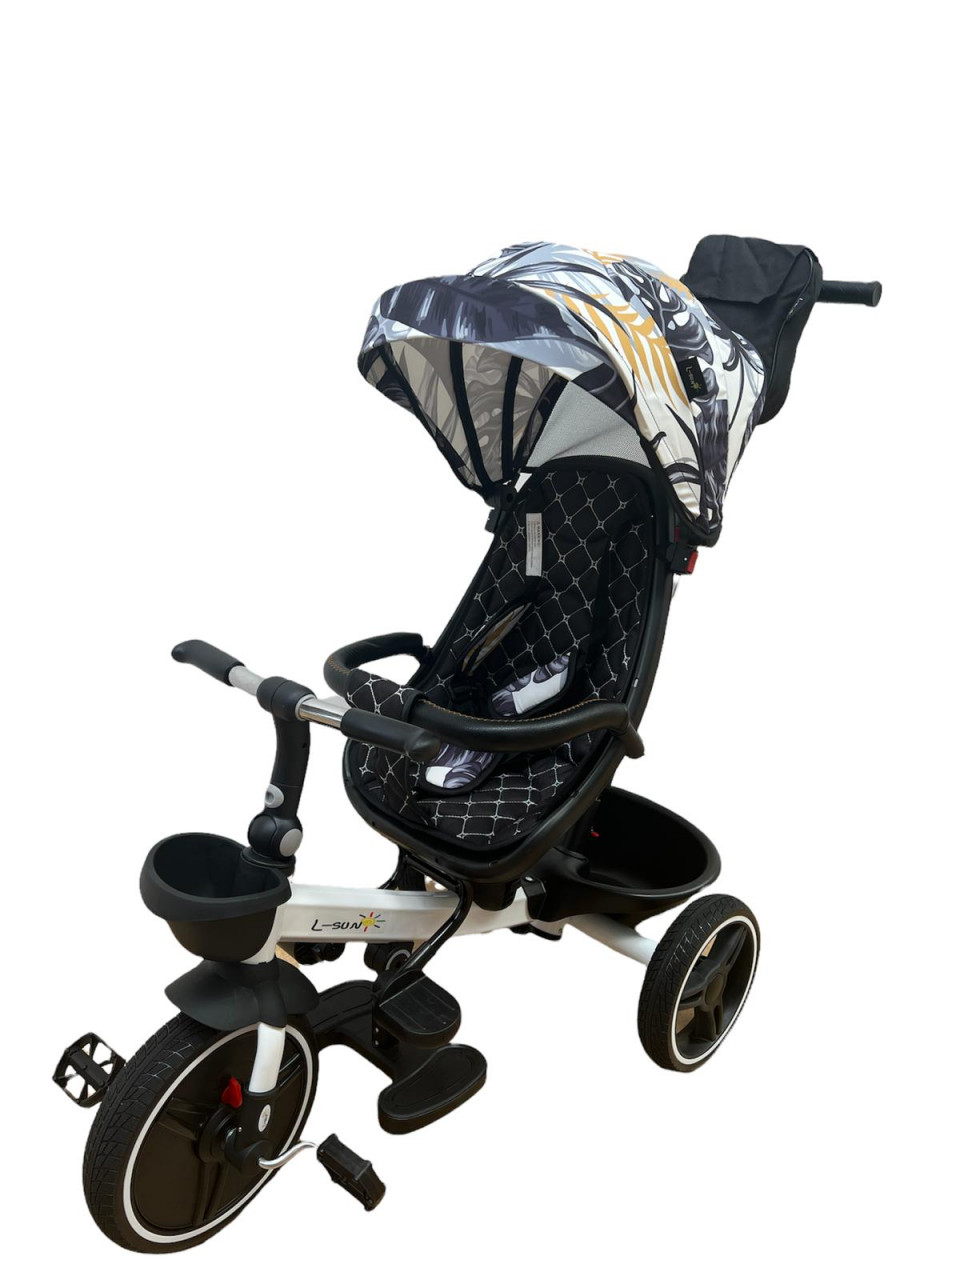 scaun auto bebe cu pozitie de somn Tricicleta pliabila cu scaun reversibil si pozitie de somn, Negru cu frunze, TMR-44-frunze